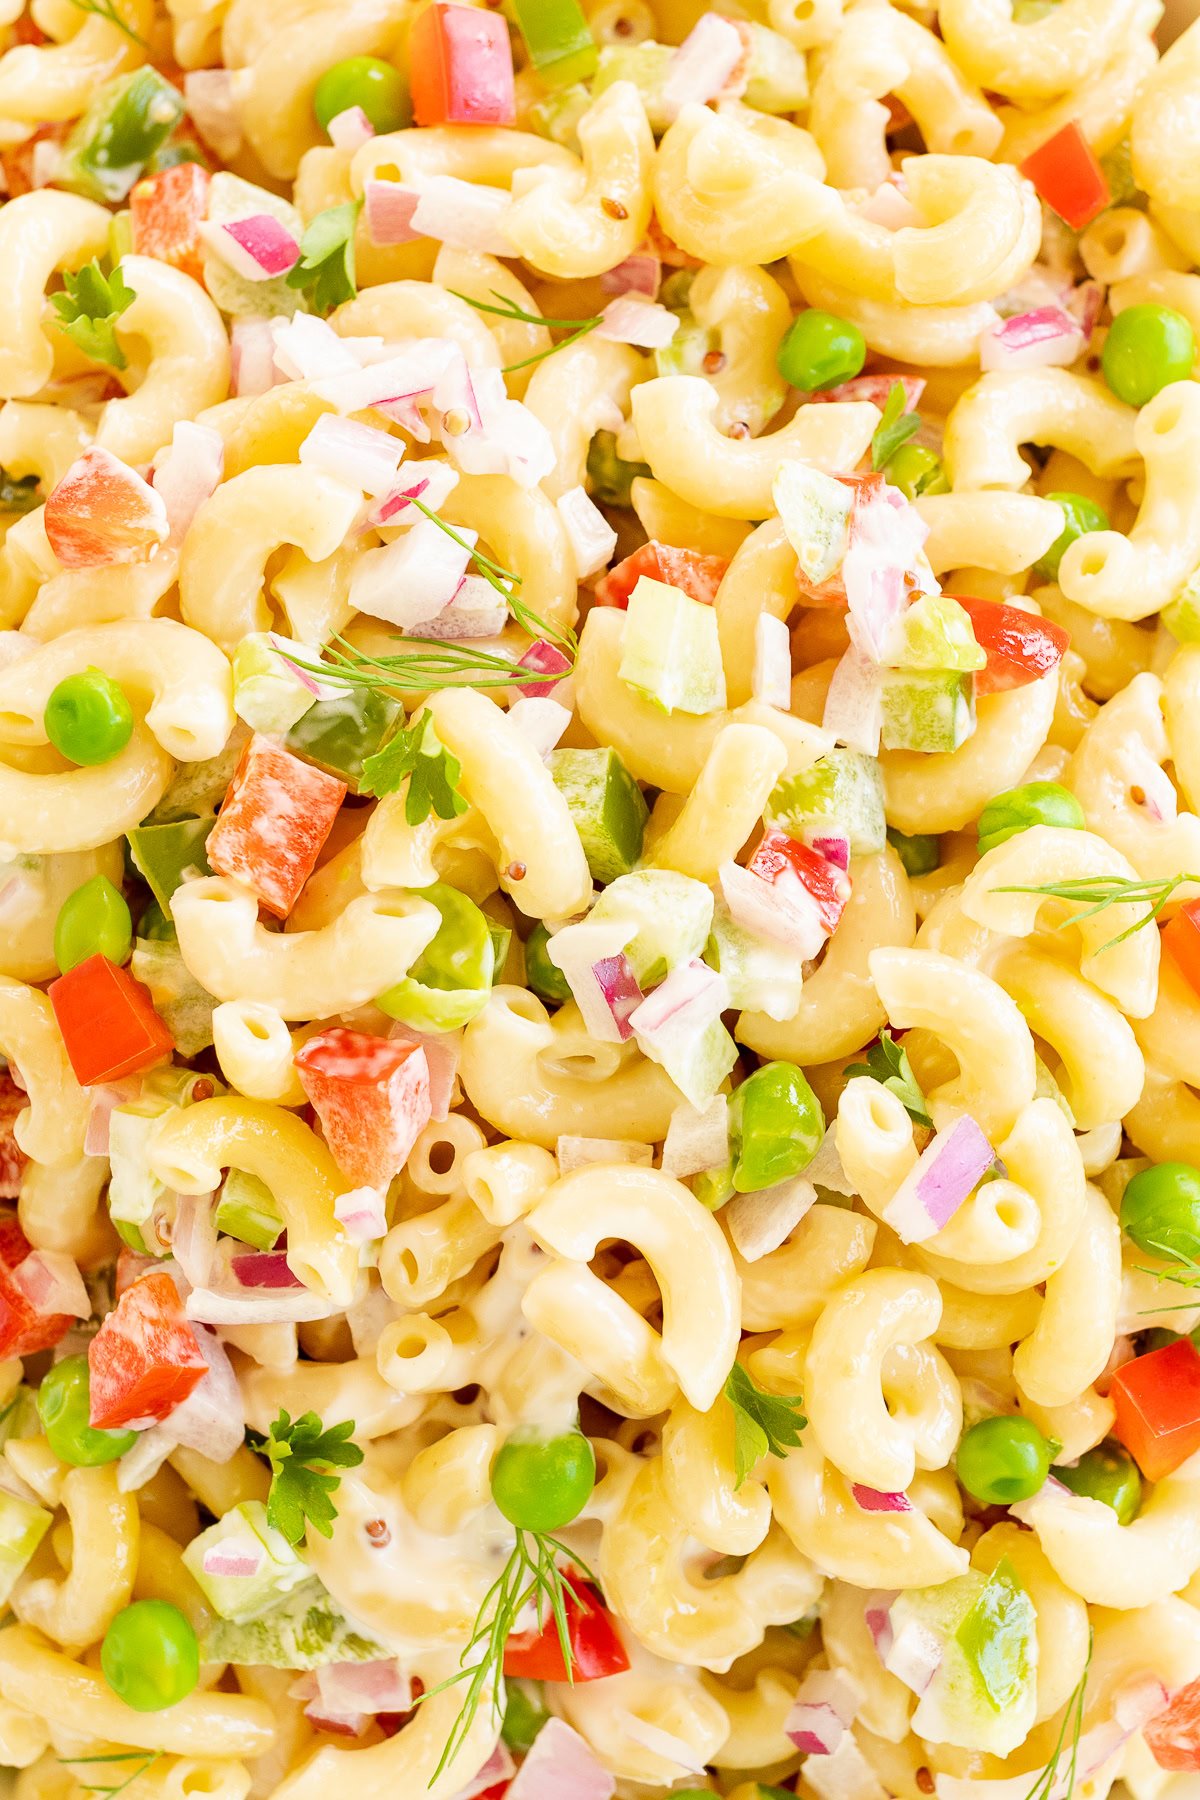 A close up of a macaroni pasta salad.